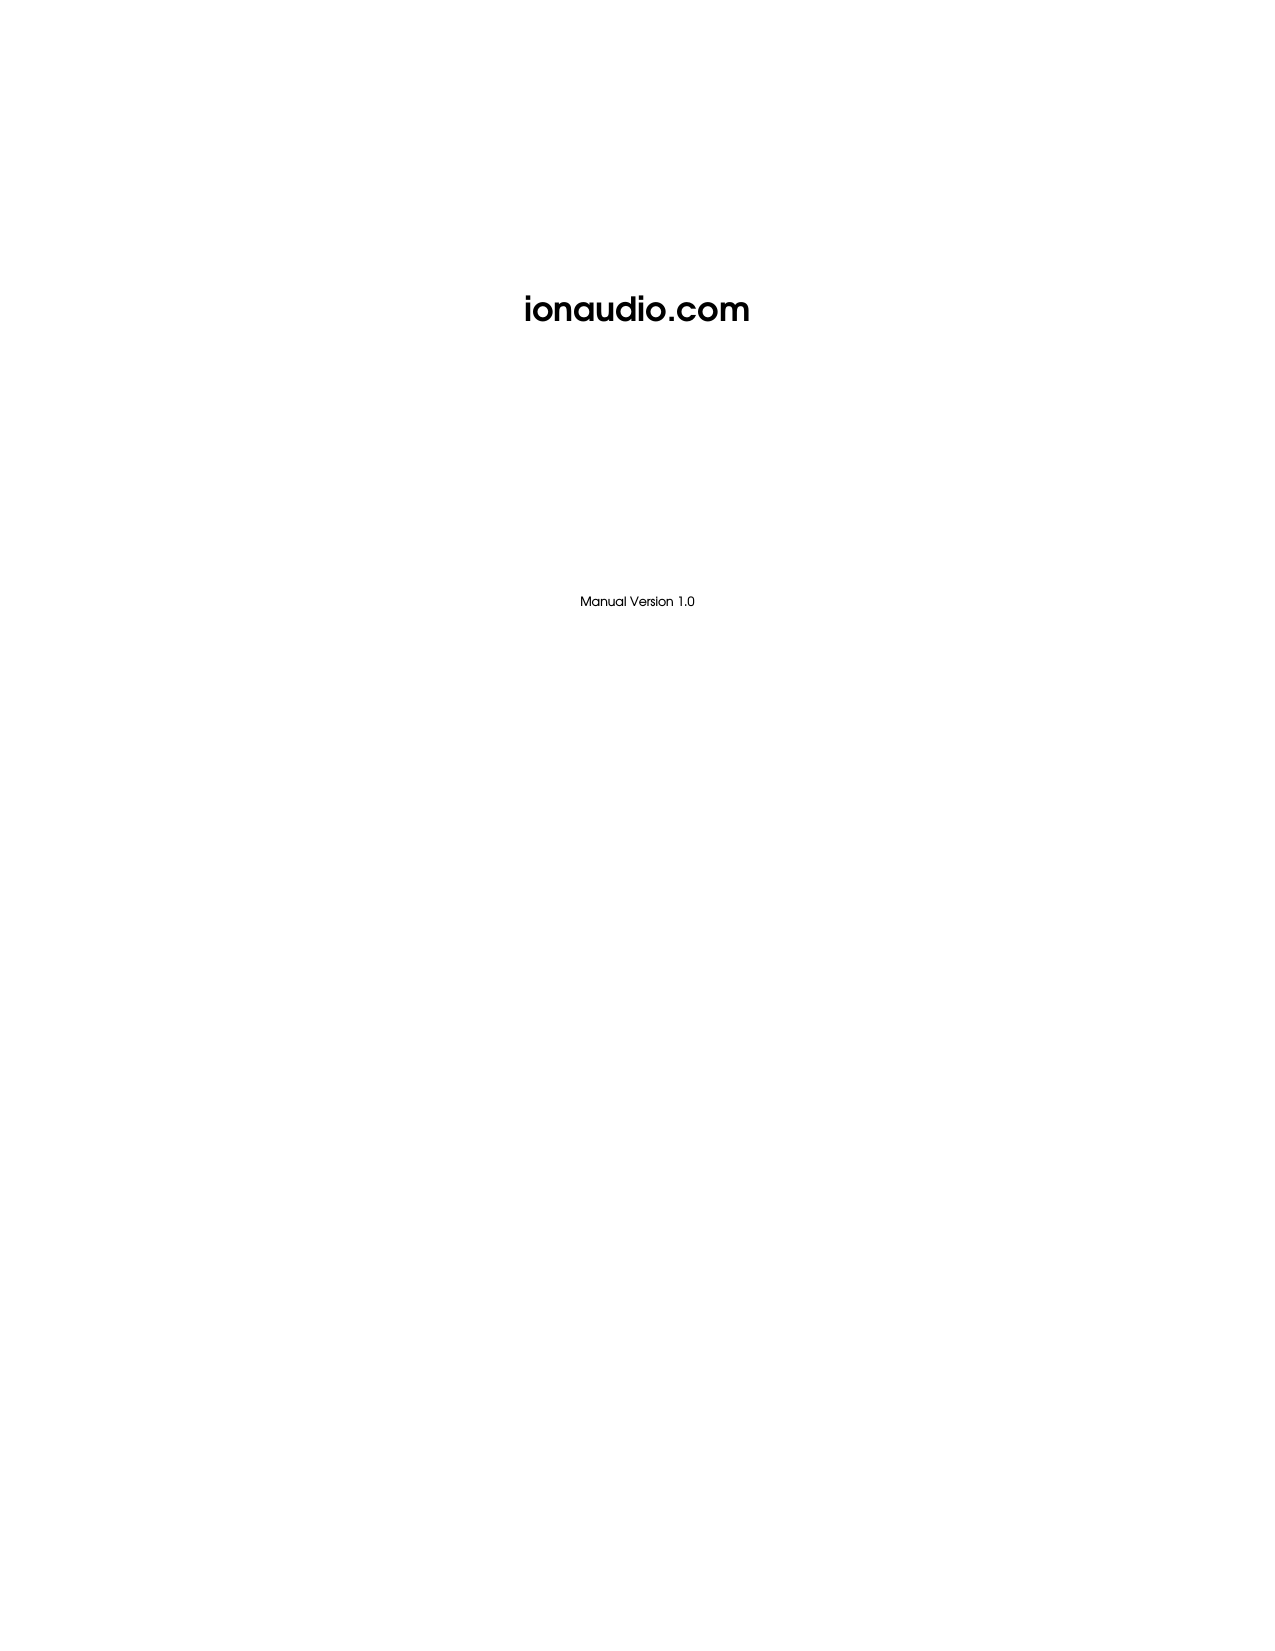              ionaudio.com            Manual Version 1.0 